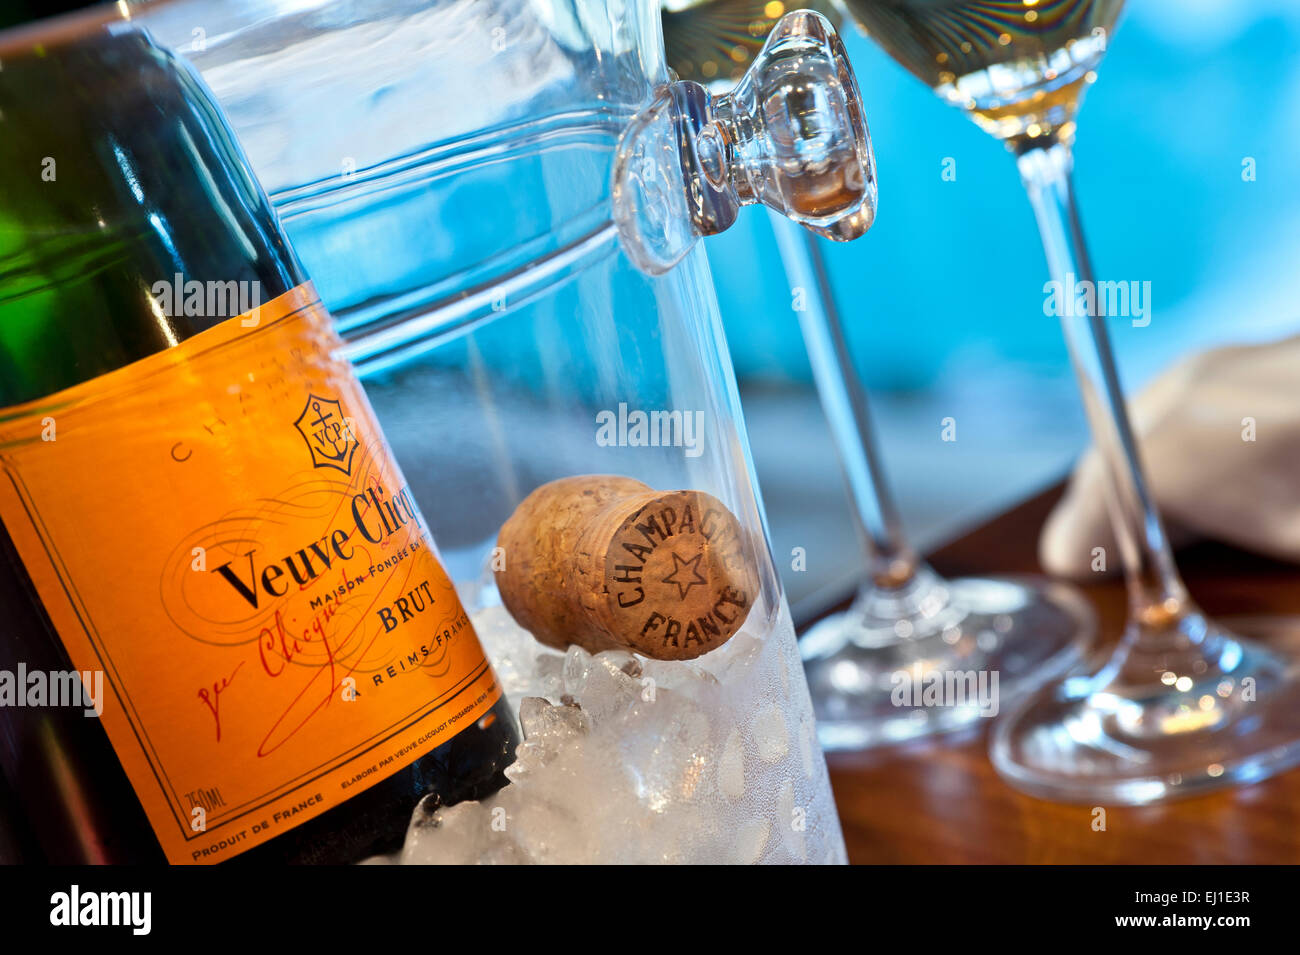 Chiudere la vista su Veuve Clicquot Fine Champagne bottiglia su ghiaccio con sughero e bicchieri, piscina di lusso in background Foto Stock